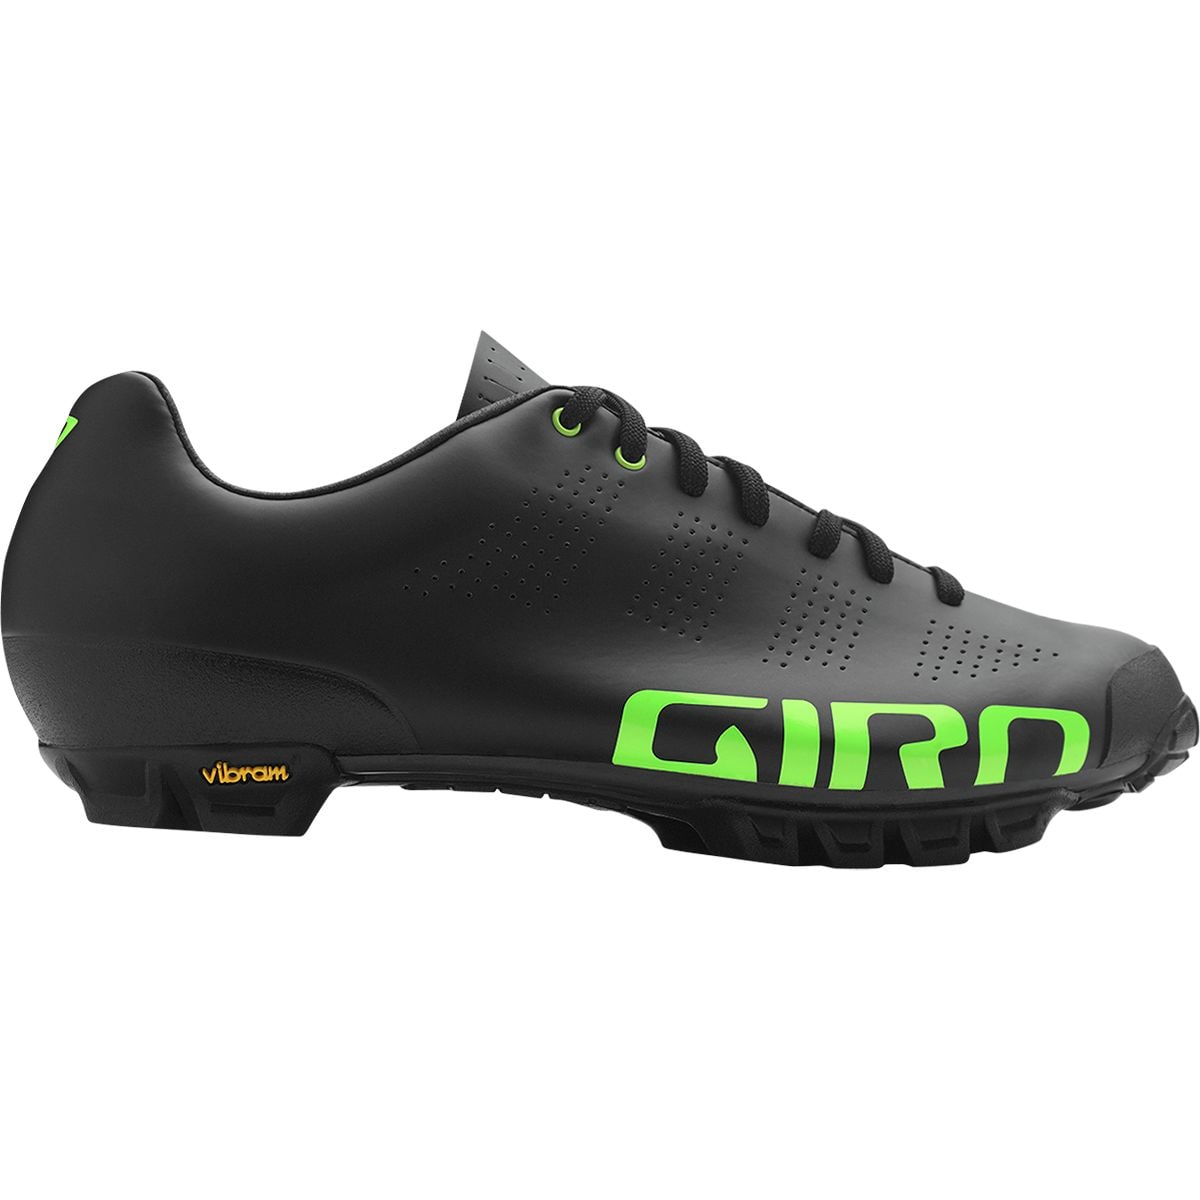 Giro Empire VR90 HV+ Cycling Shoe - Men's